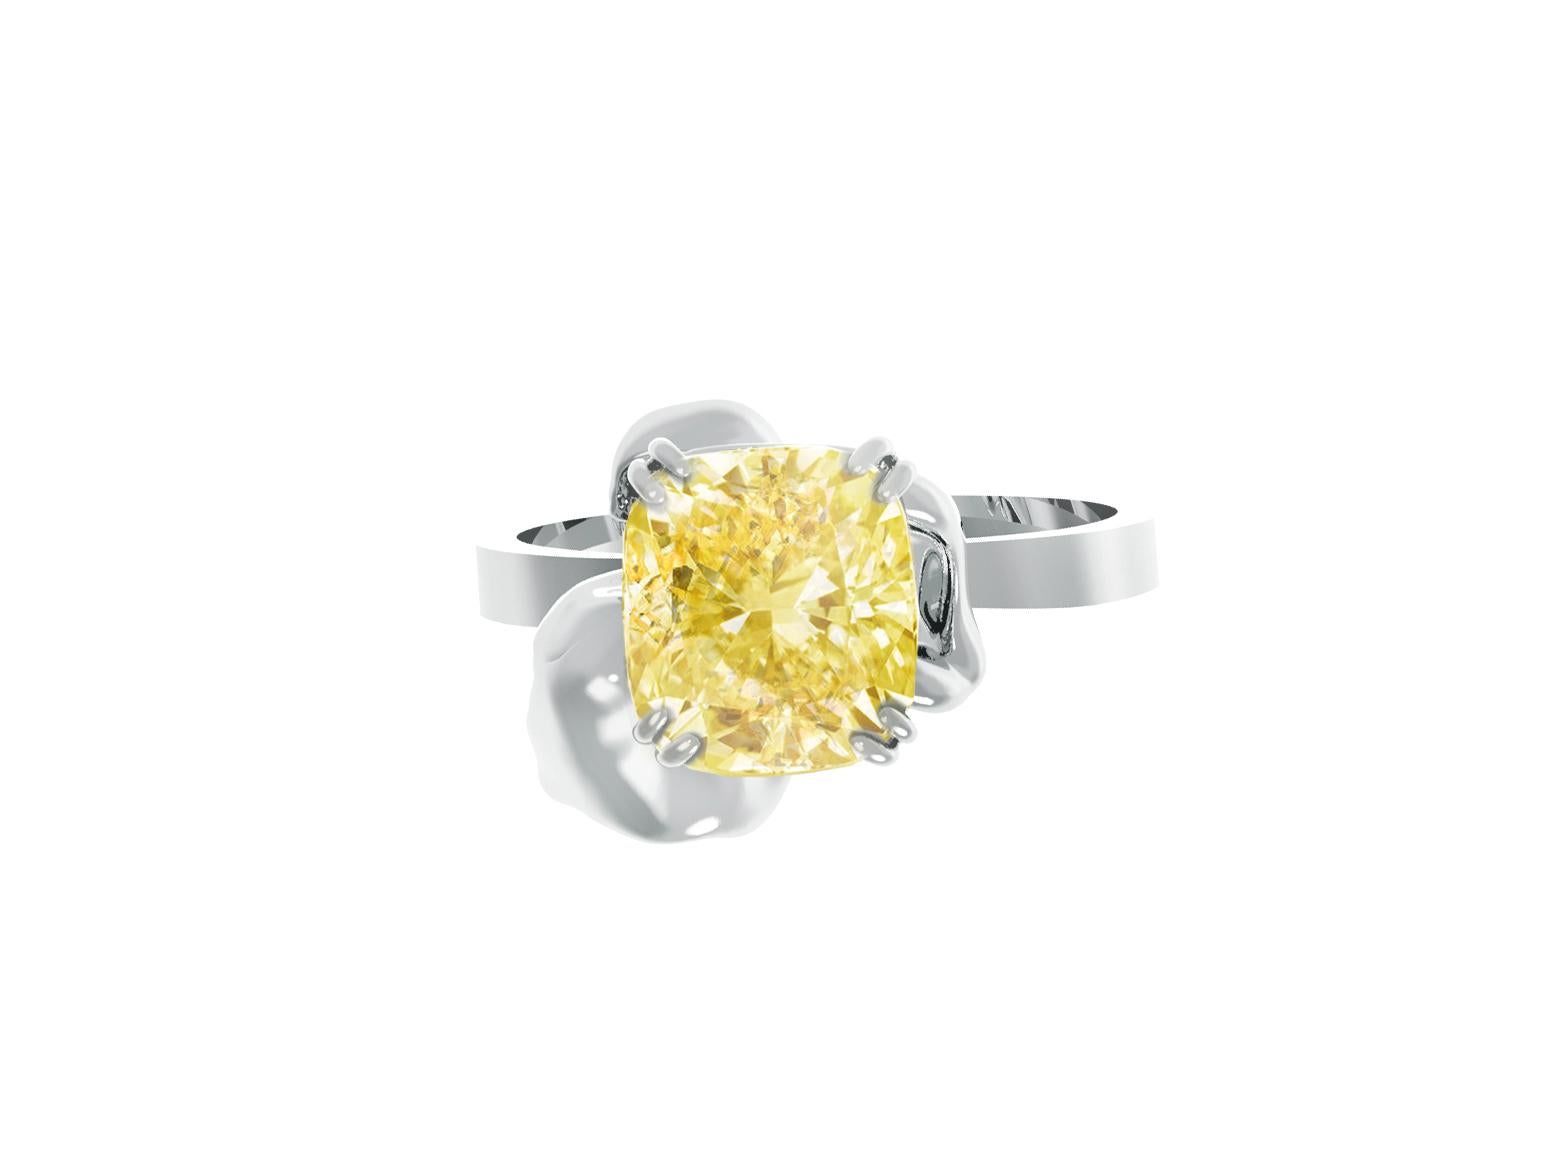 Cette bague de fiançailles Flower est en or blanc 18 carats et présente un diamant jaune fantaisie de taille coussin certifié crushed ice, pesant 2,2 carats. Le certificat de la pièce est disponible sur demande. La bague présente un excellent